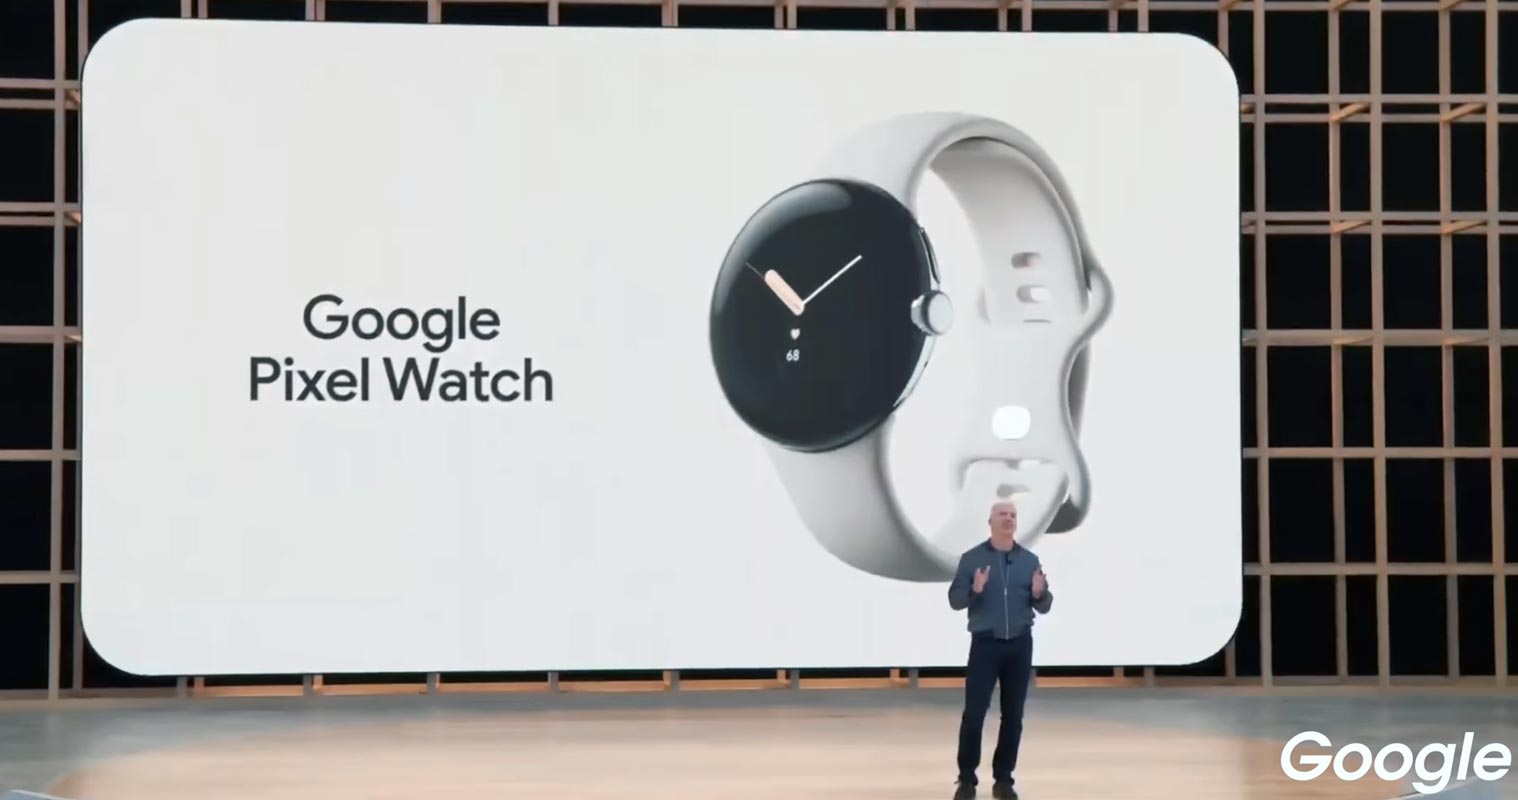 Google Pixel Watch Launch in IO 2022